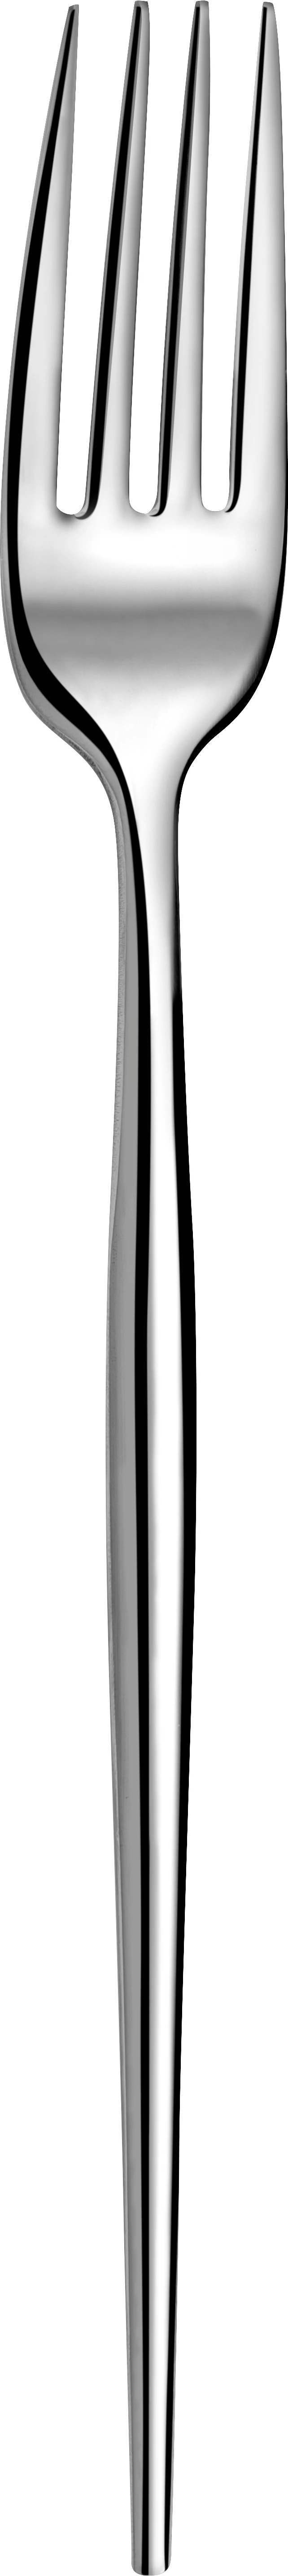 Amefa Soprano spisegaffel, 20,3 cm